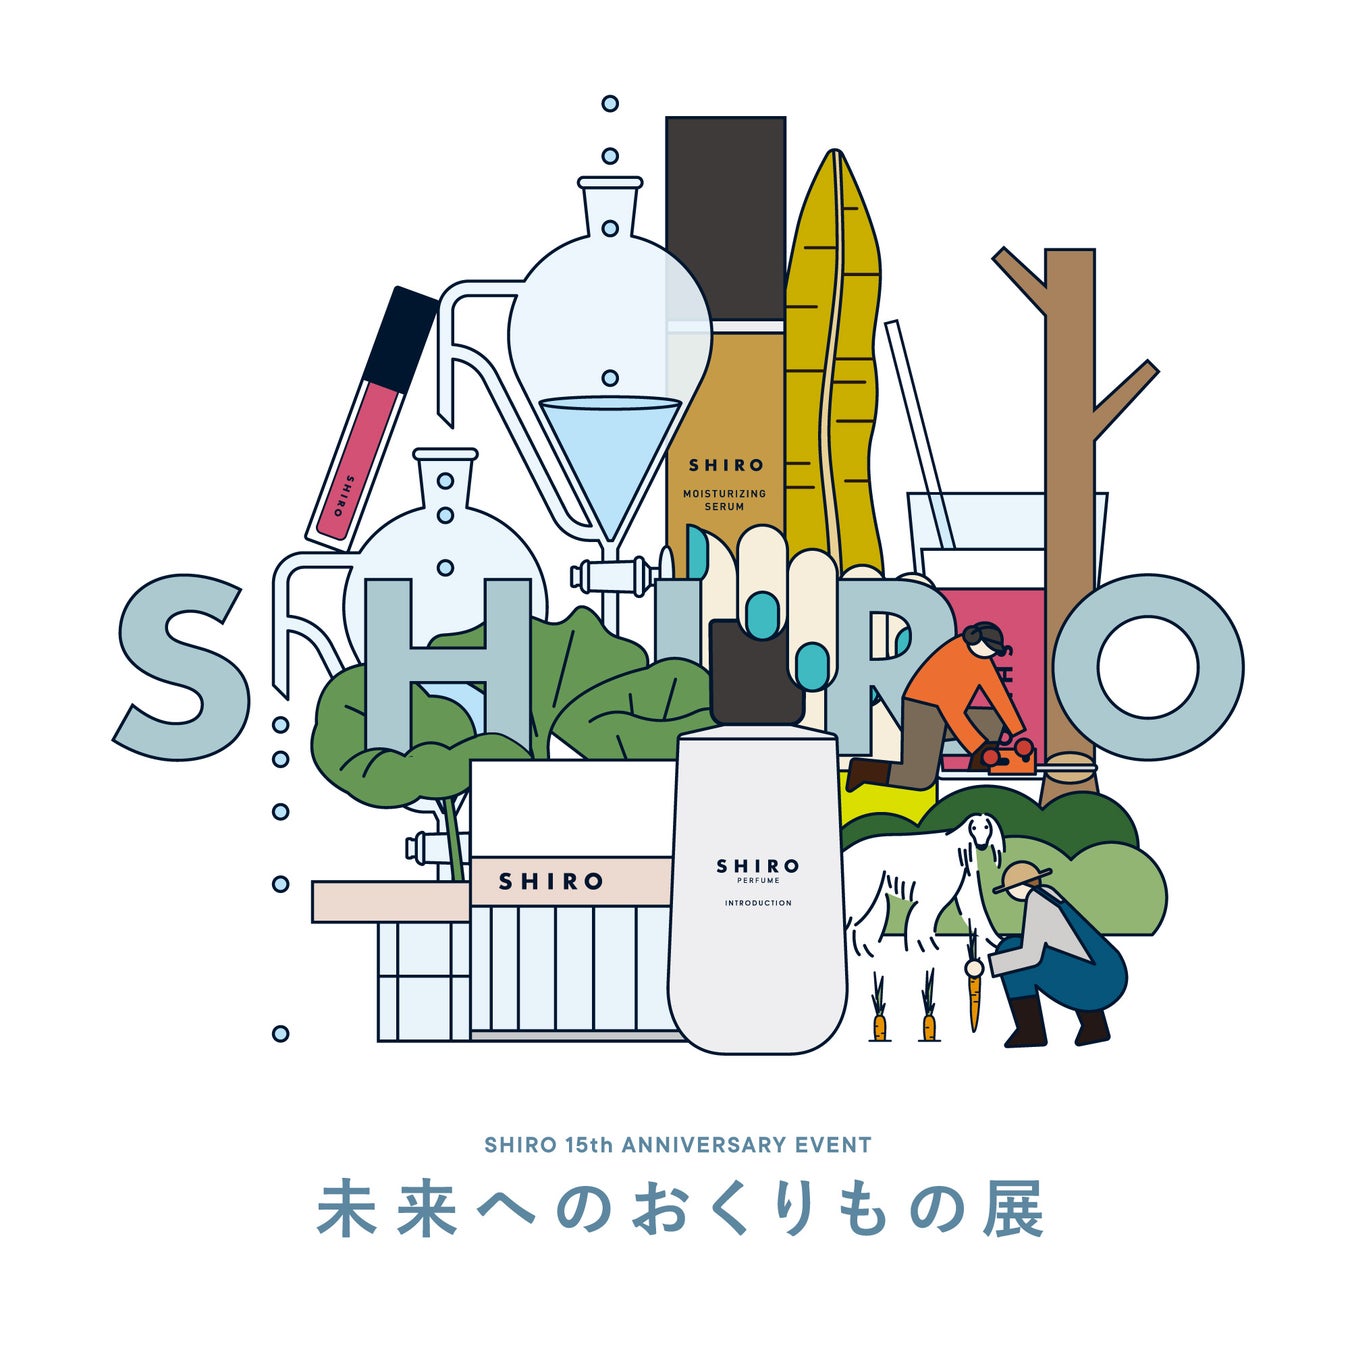 【SHIRO】「未来へのおくりもの展」15th ANNIVERSARY EVENT